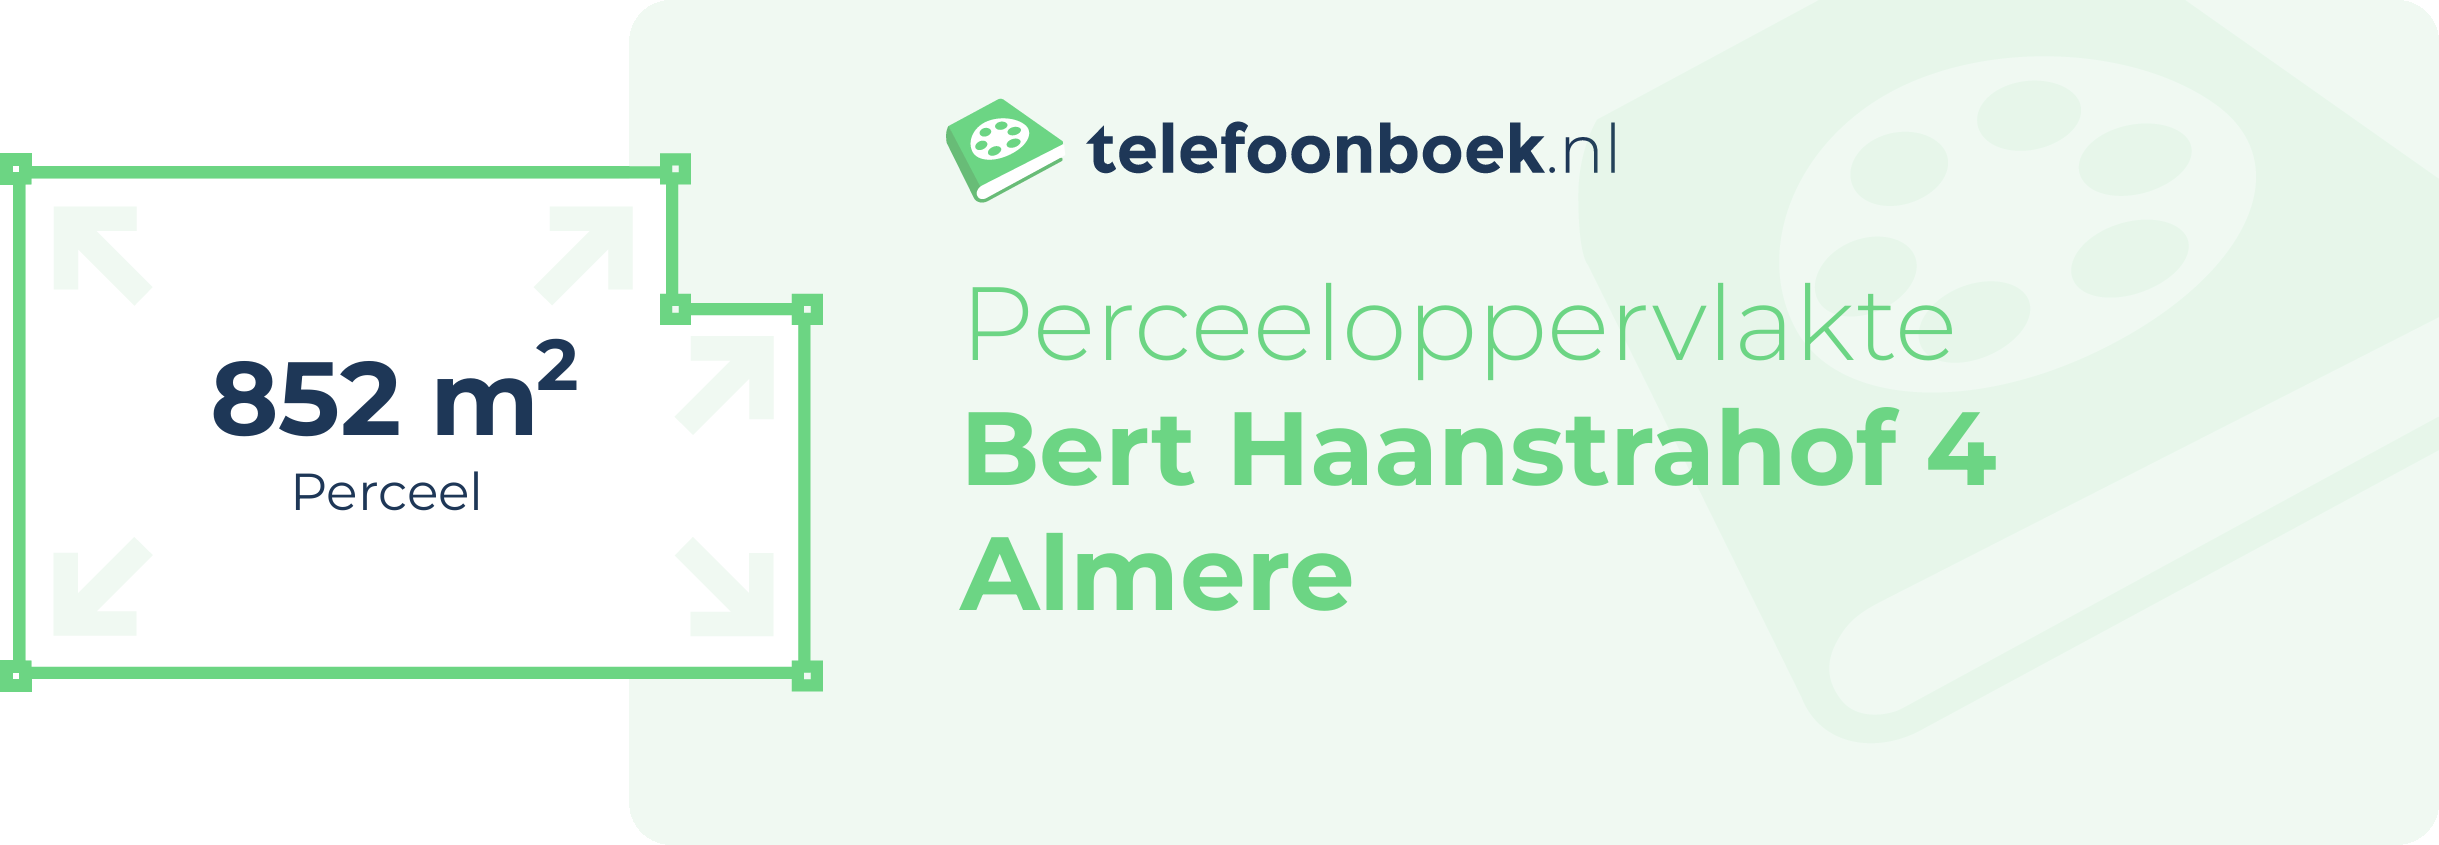 Perceeloppervlakte Bert Haanstrahof 4 Almere